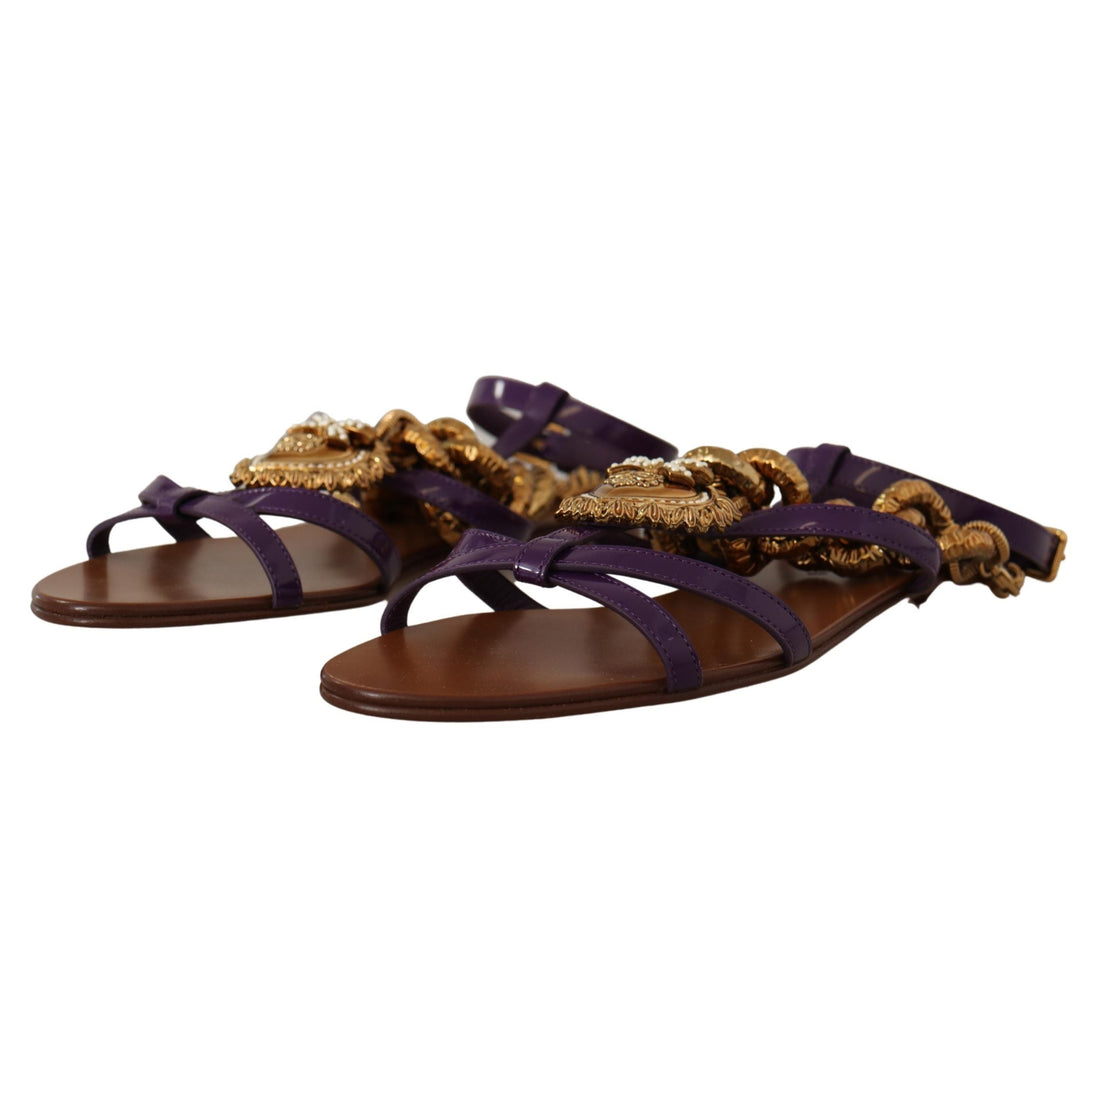 Dolce & Gabbana Purple Leather Devotion Flats Sandals Shoes